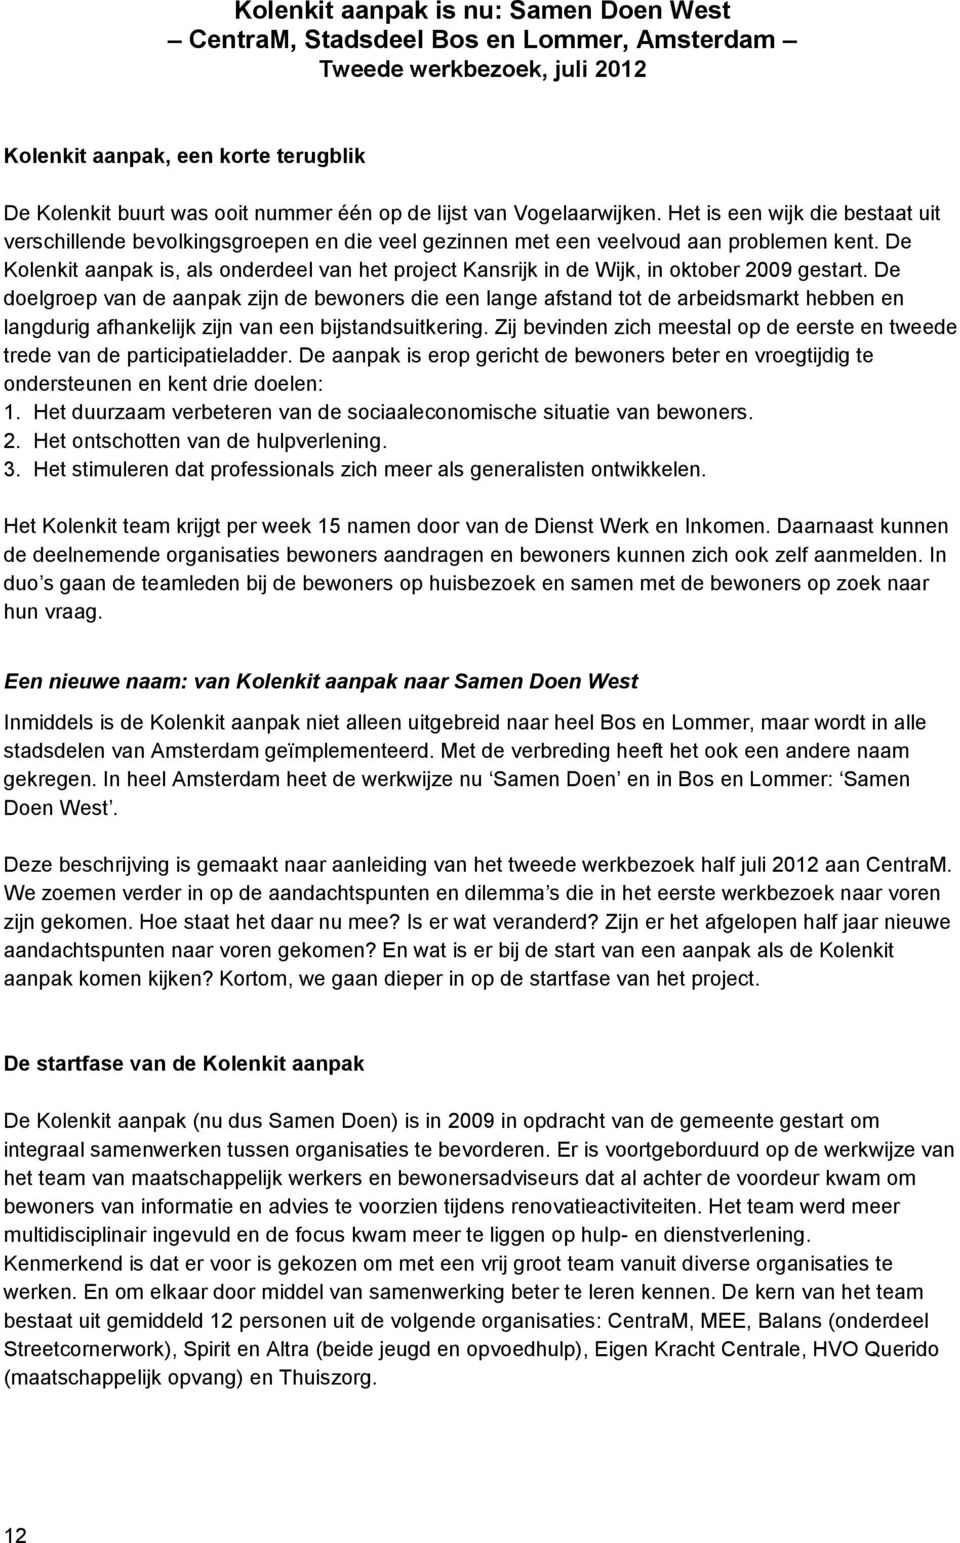 De Kolenkit aanpak is, als onderdeel van het project Kansrijk in de Wijk, in oktober 2009 gestart.